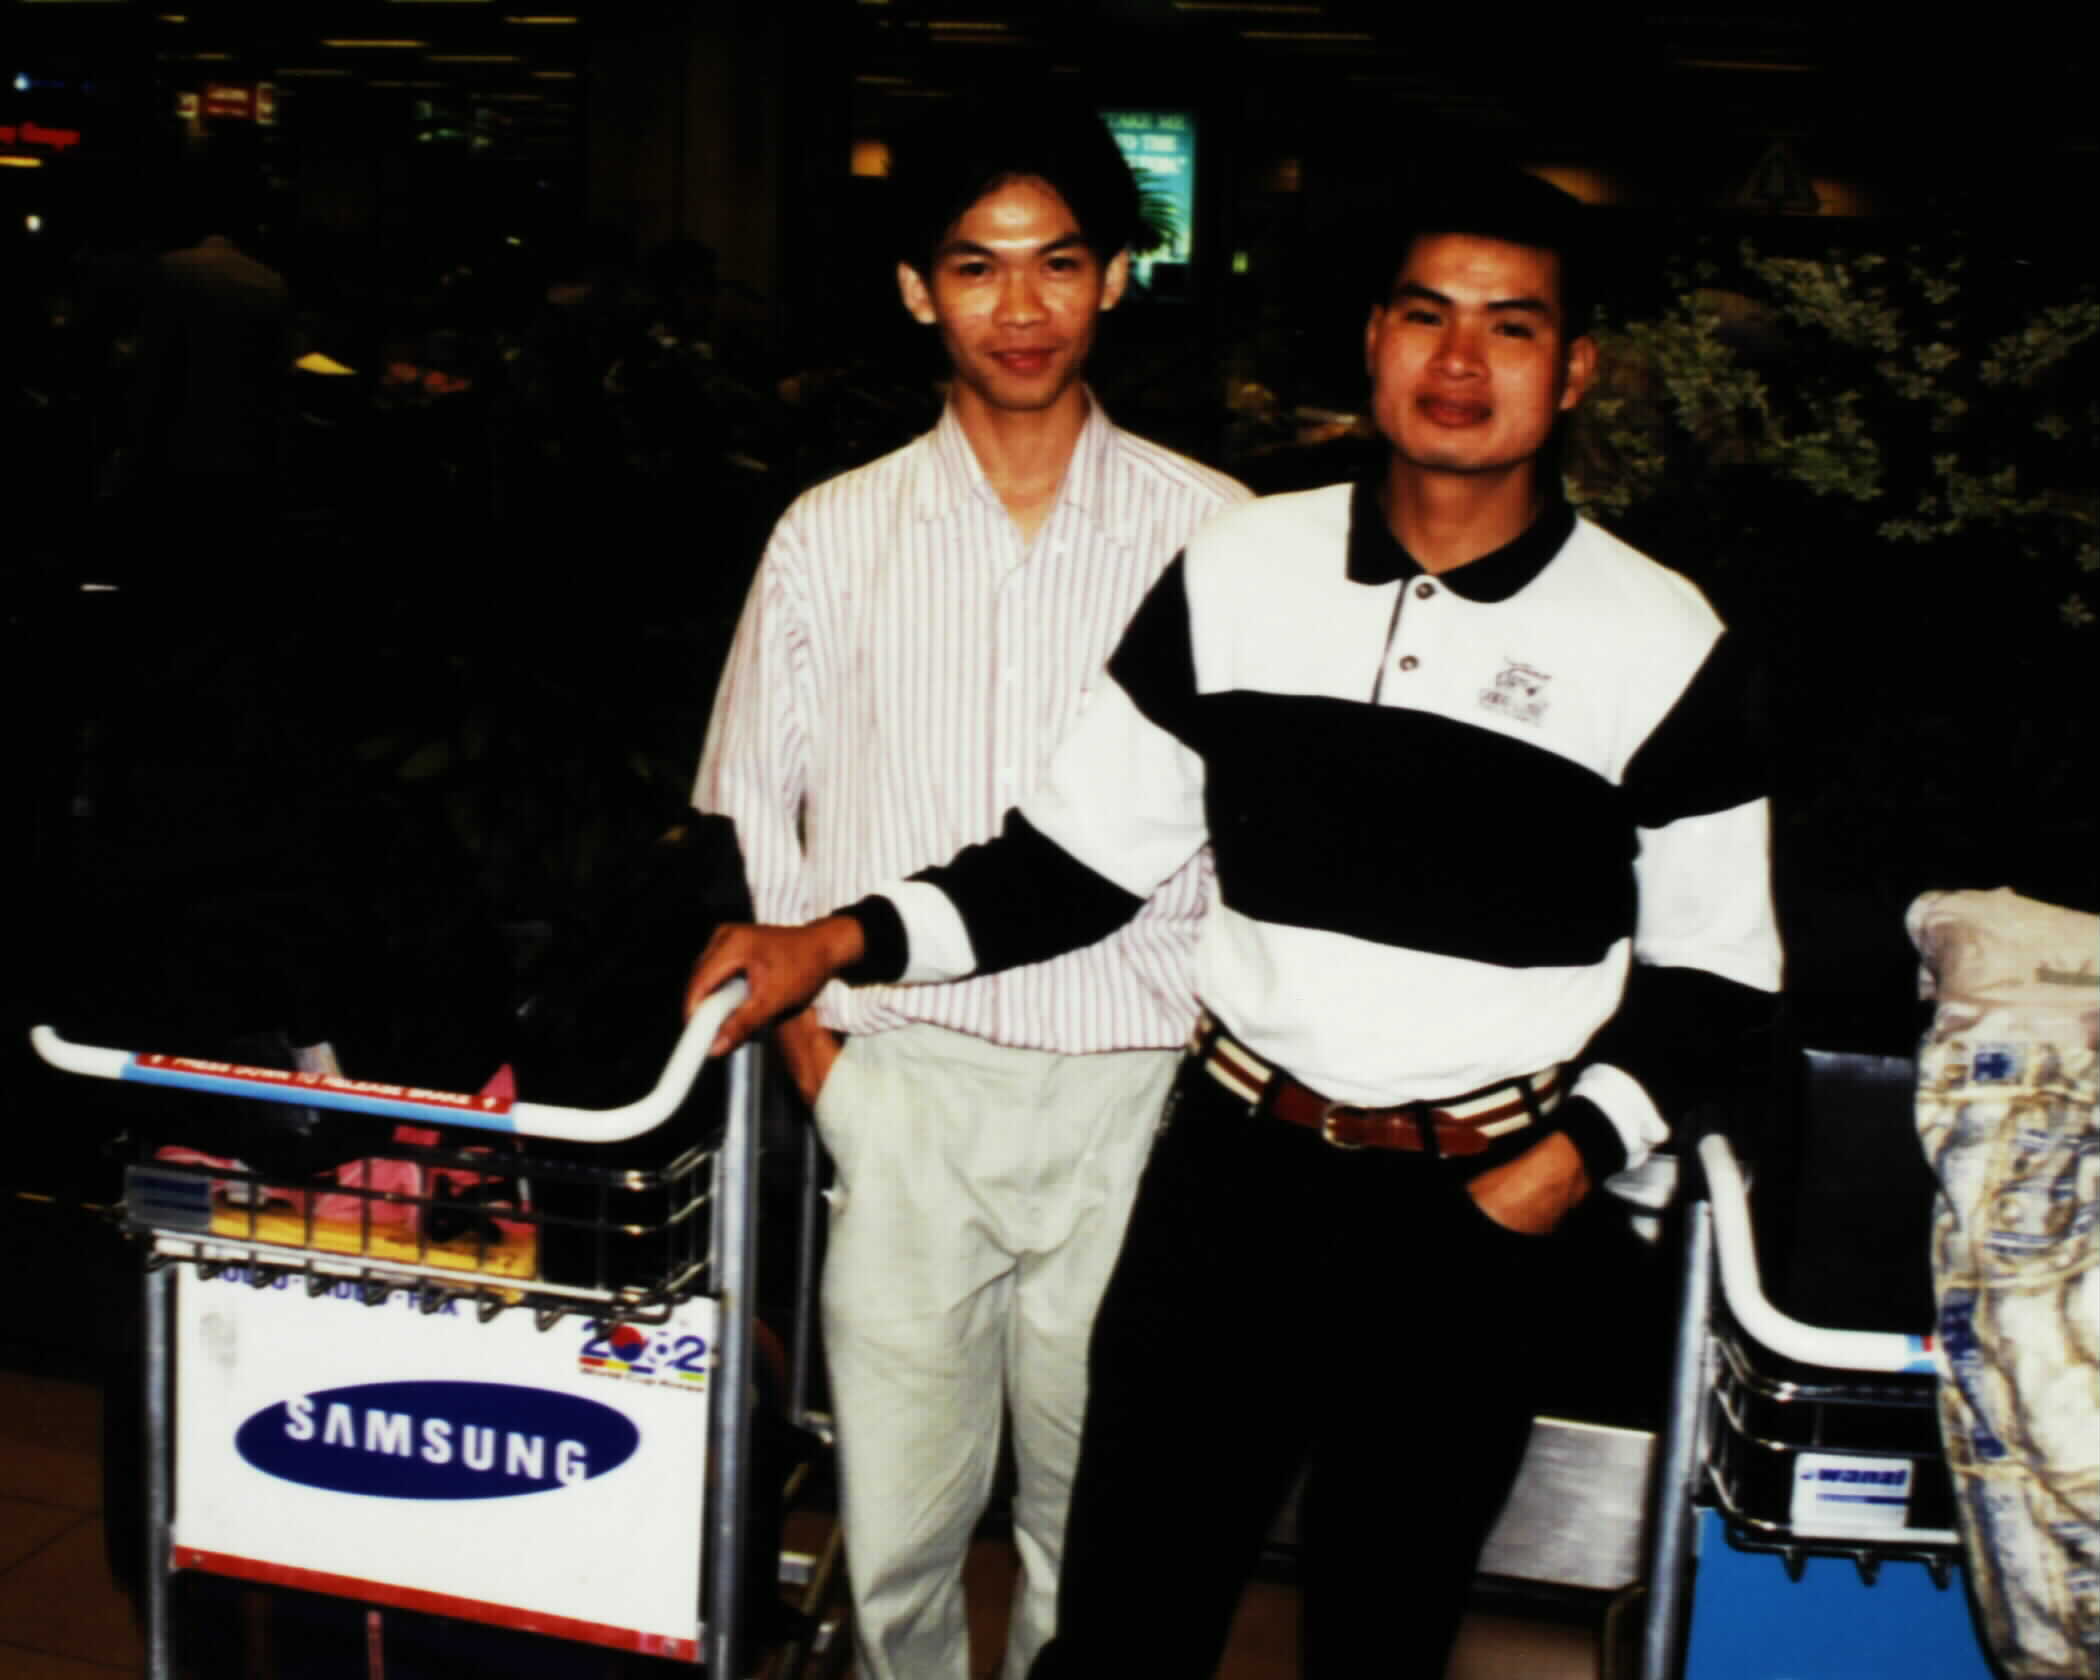 Taken at Singapore airport in 1998.